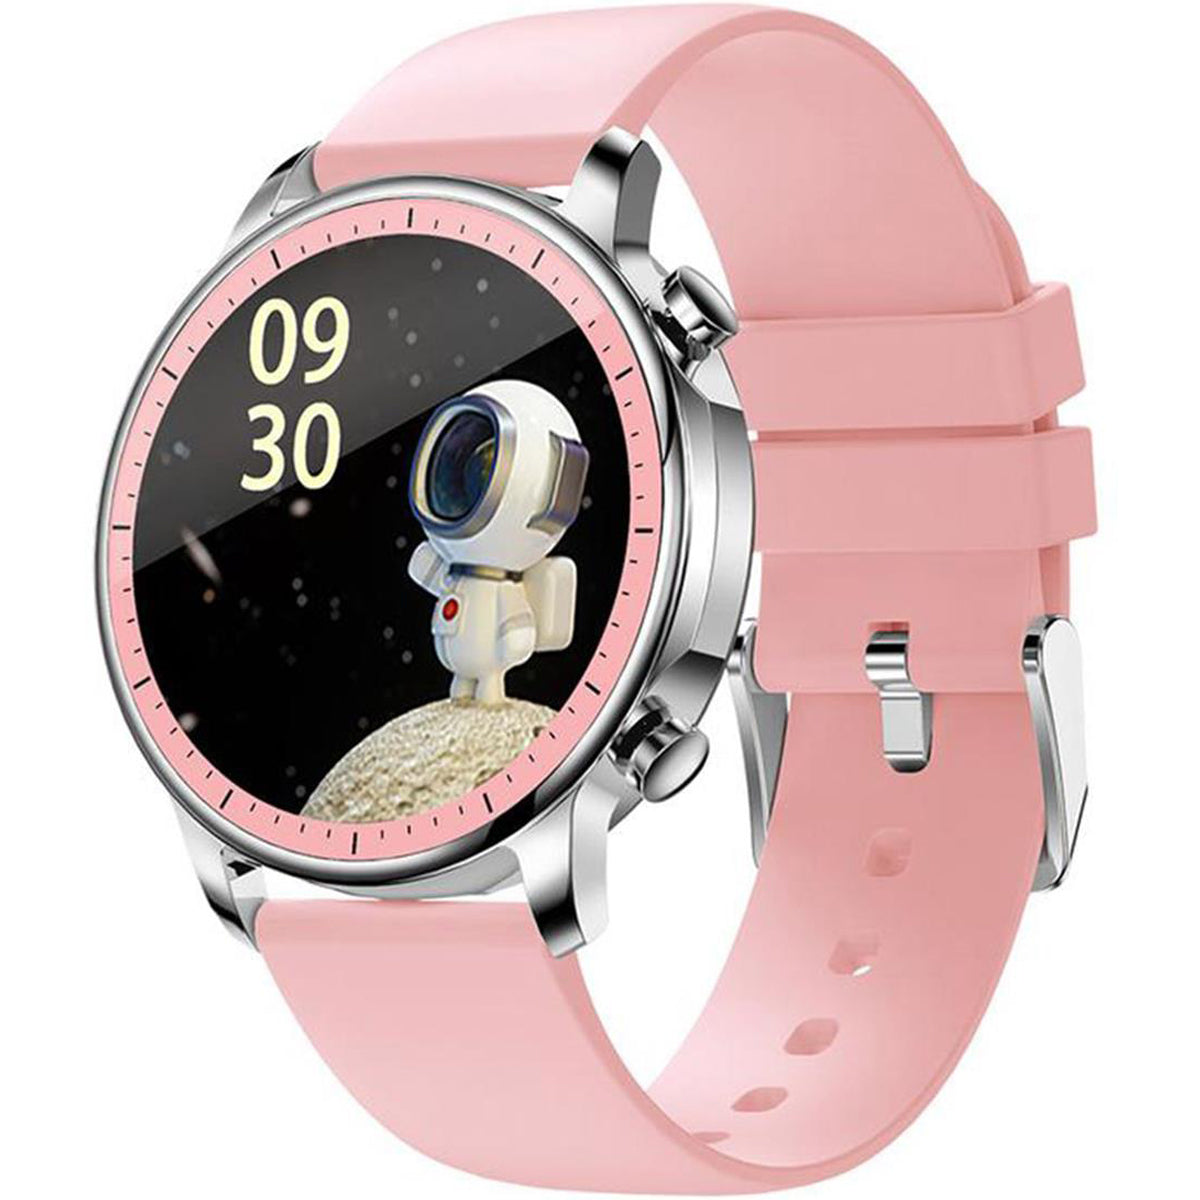 Smart Watch Reloj Inteligente V23 Fralugio Notificaciones Hd